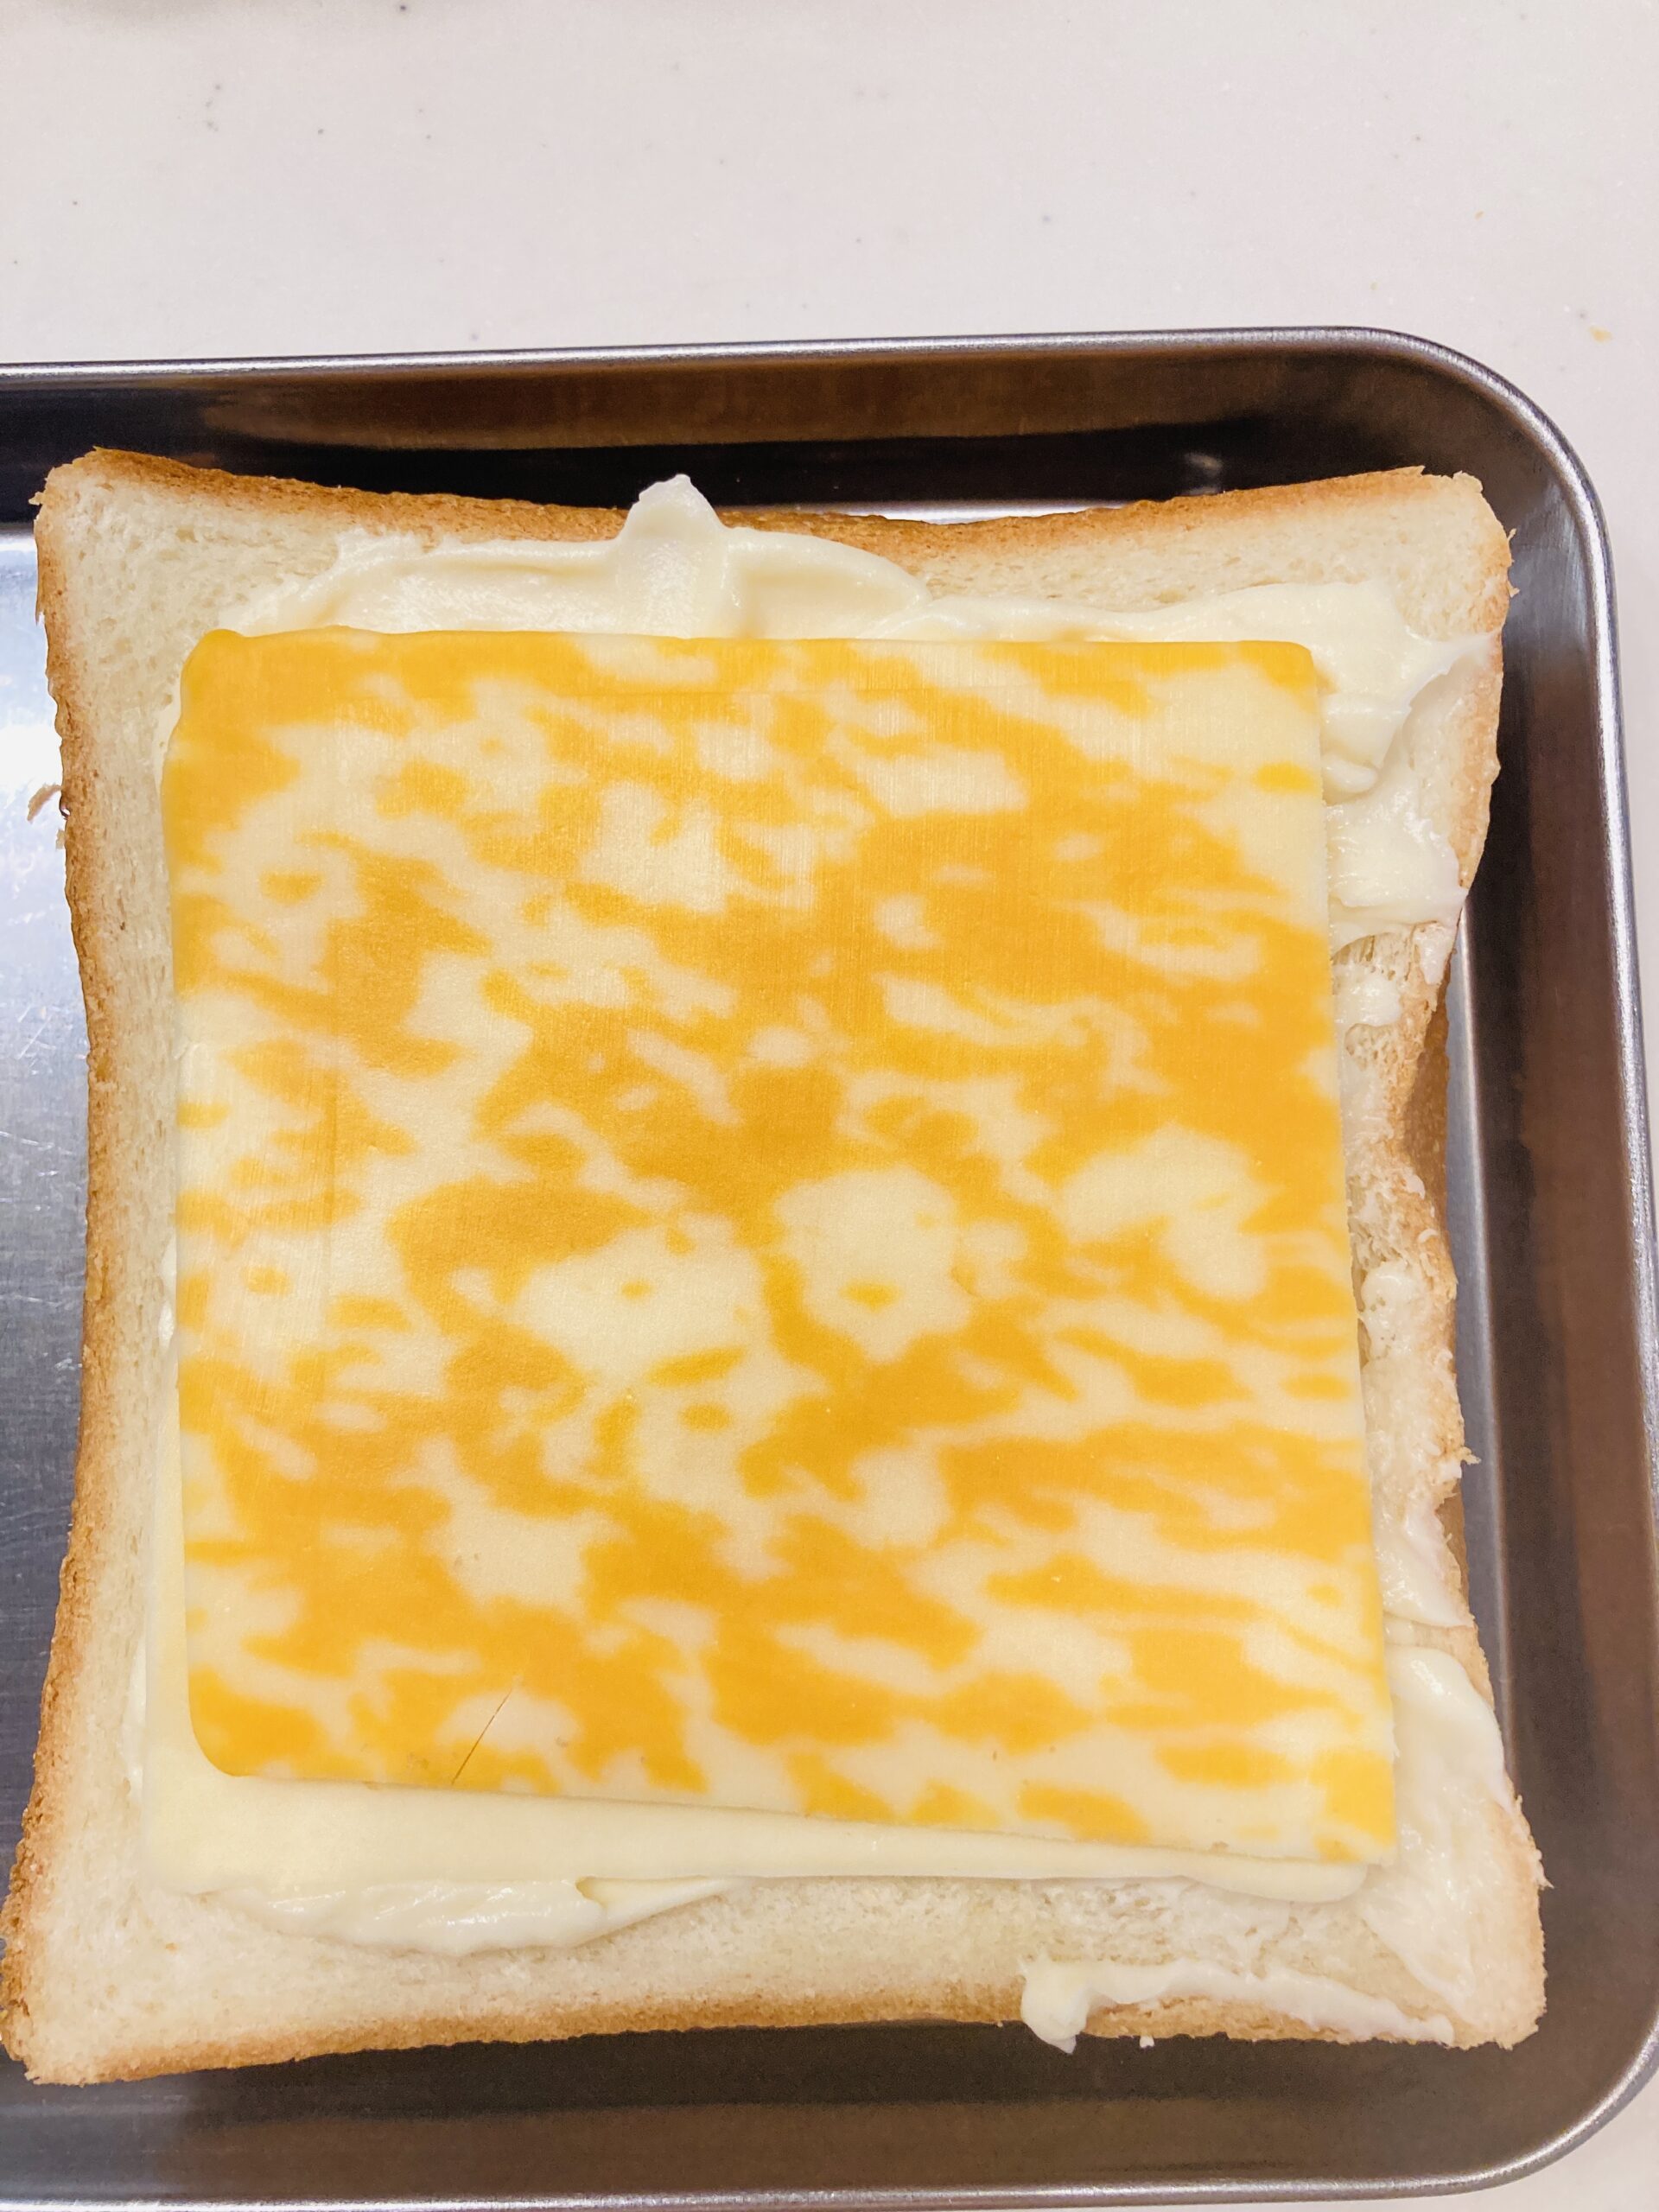 とけるタイプのスライスチーズを乗せ、トースターでチーズが溶けるまで焼きます